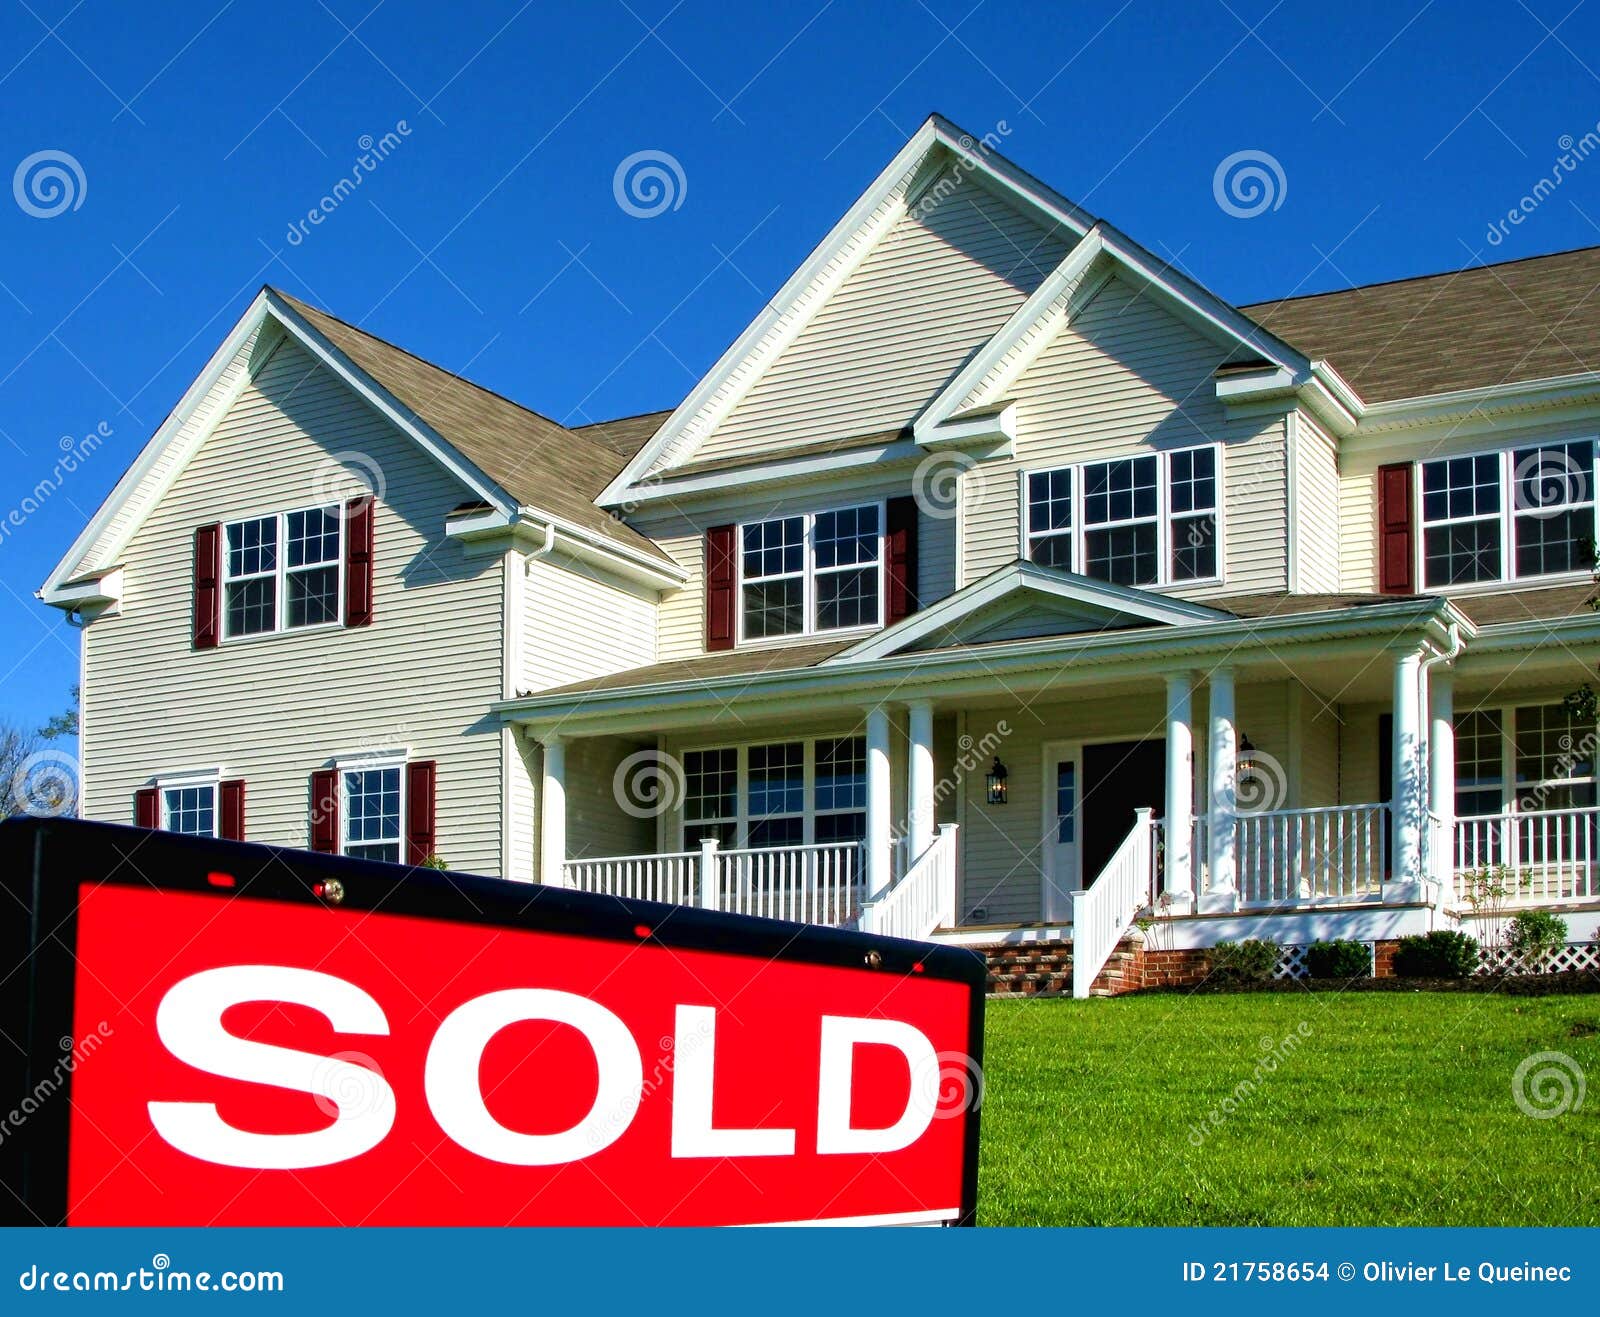 real-estate-realtor-sold-sign-house-sale-21758654.jpg